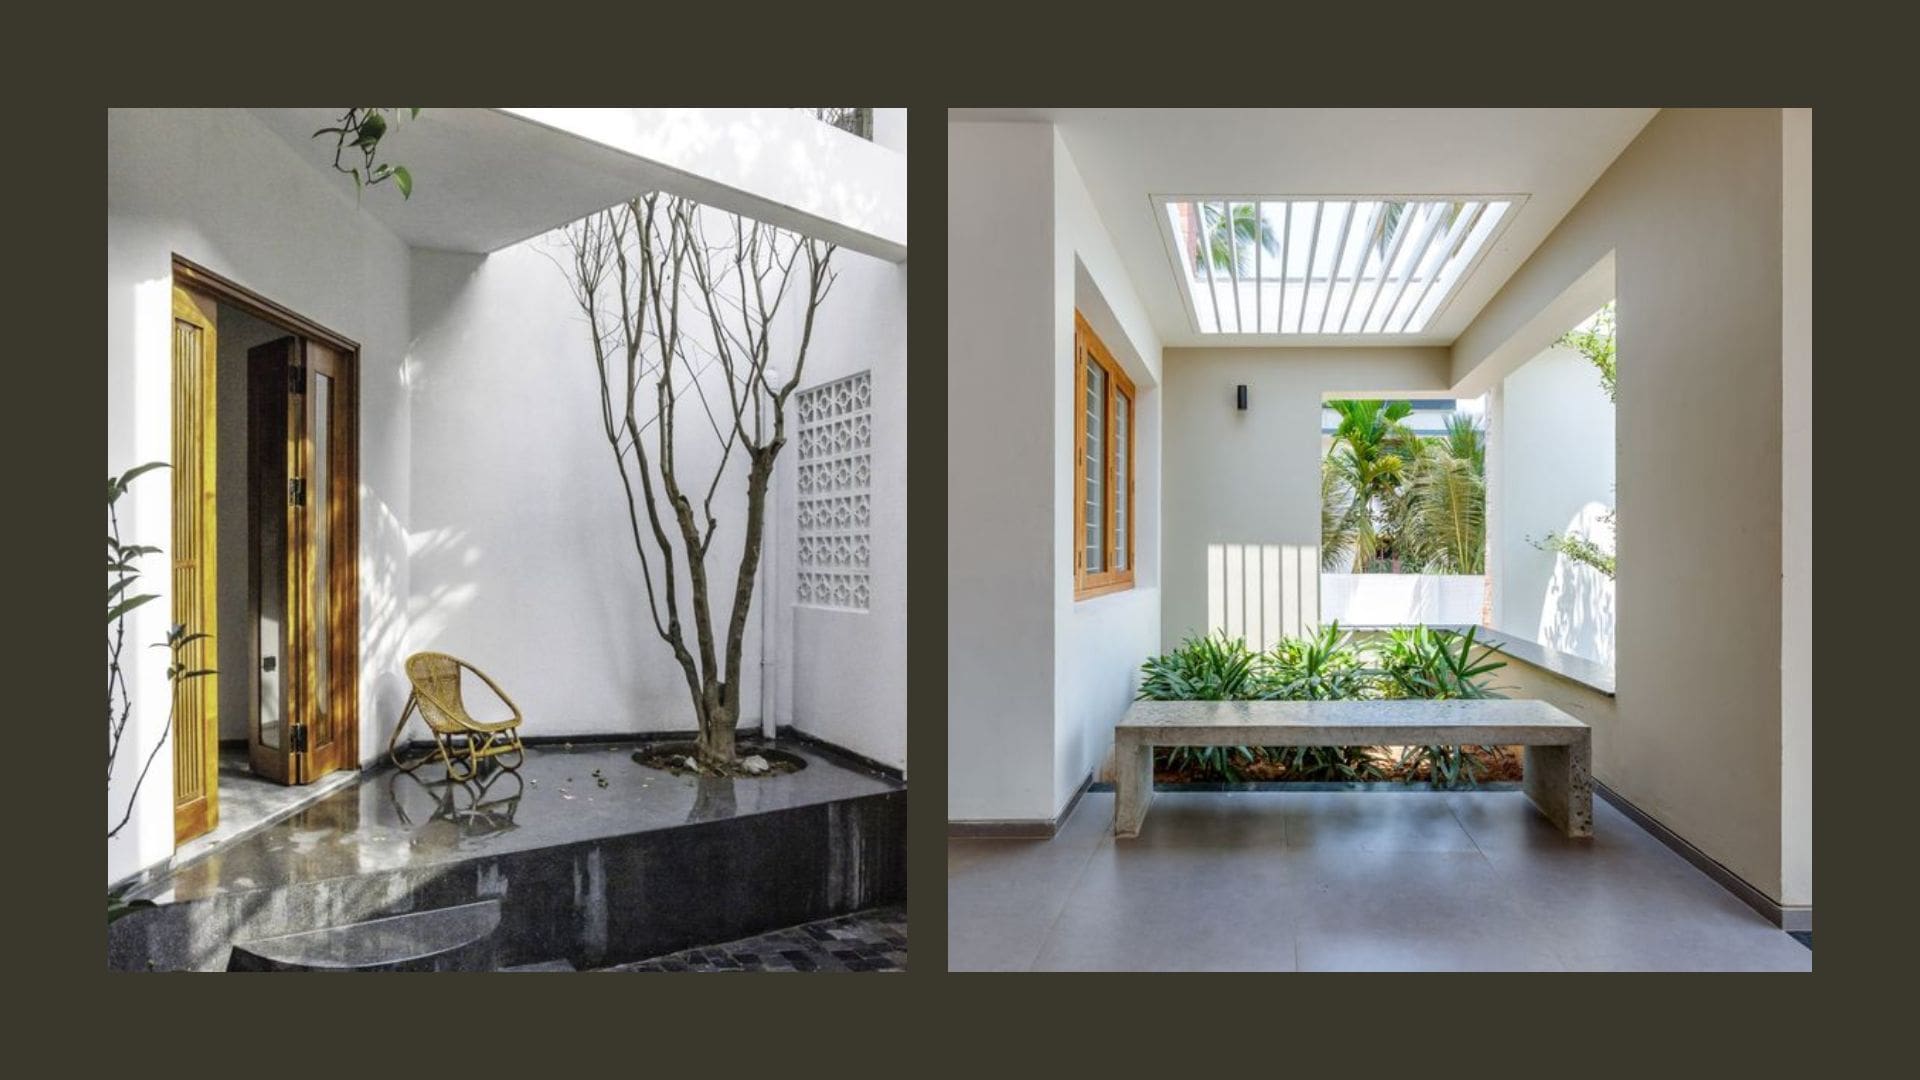 Life House - Thi công và thiết kế nội thất Đà Nẵng sang trọng 